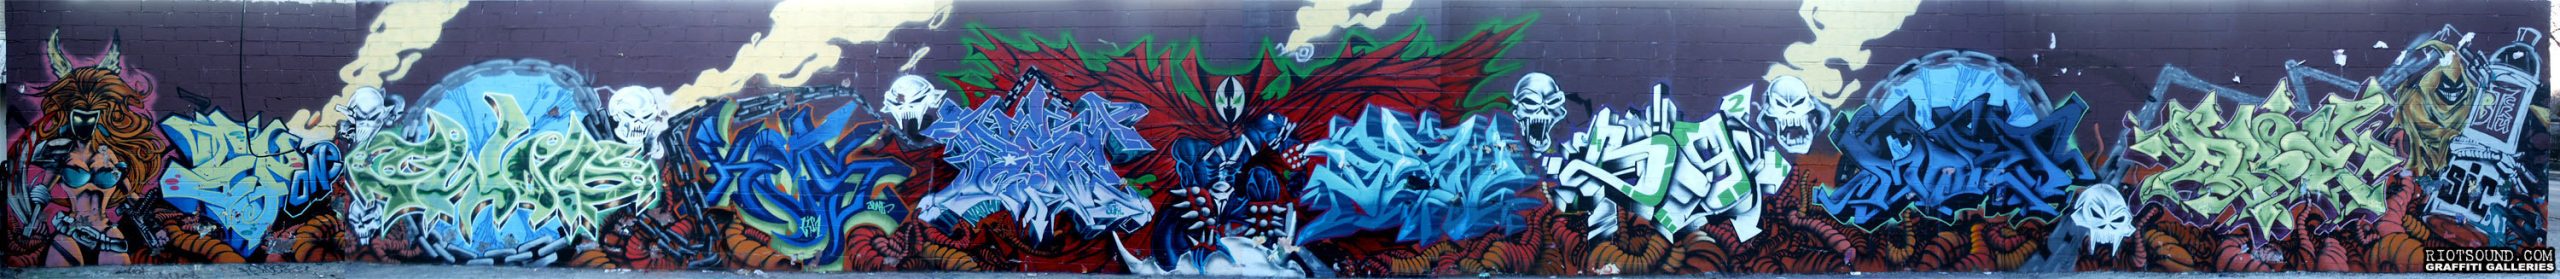 Graffiti169